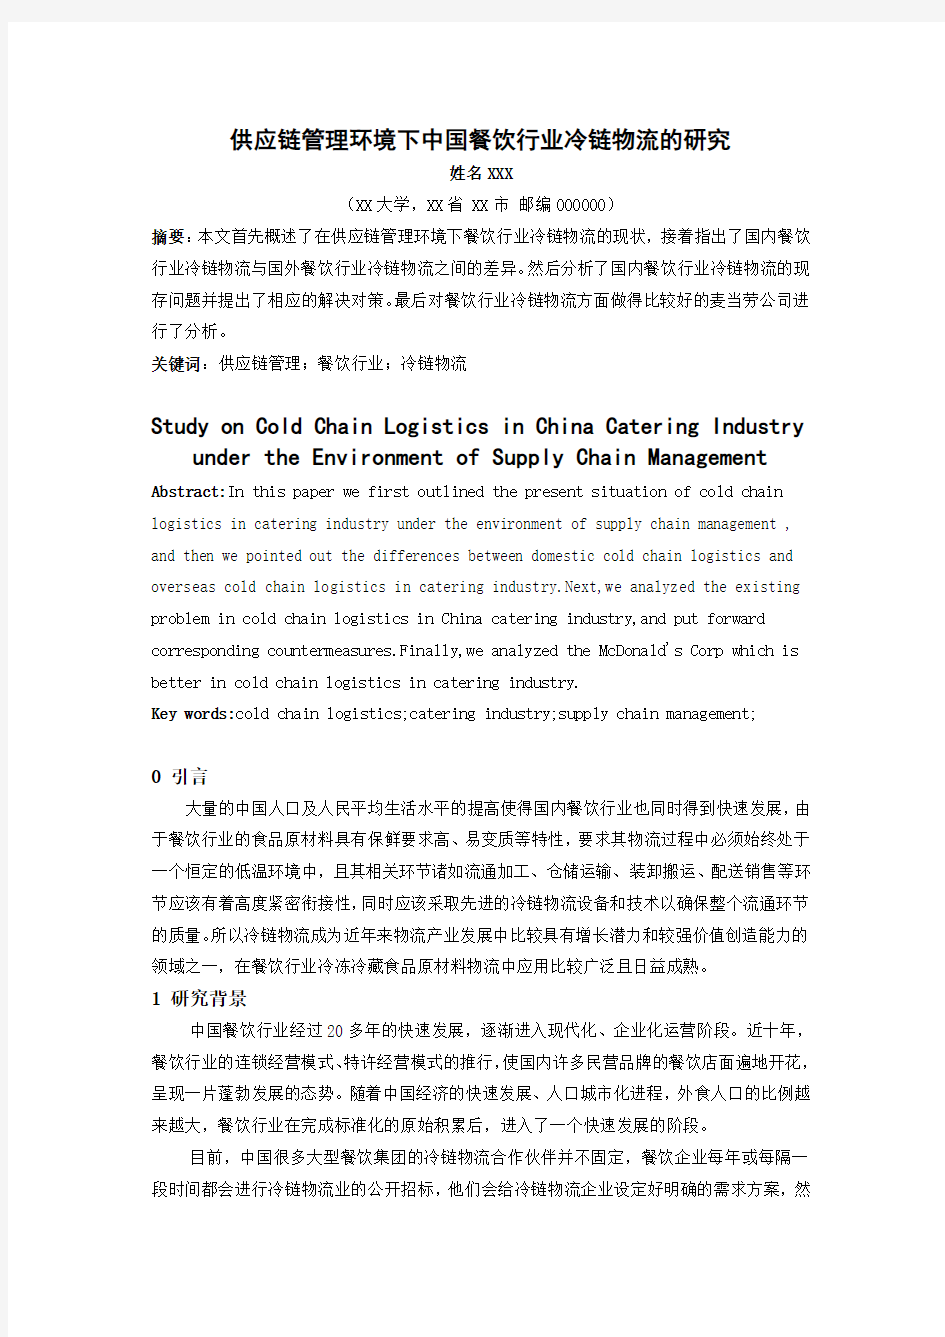 供应链管理环境下中国餐饮行业冷链物流的研究